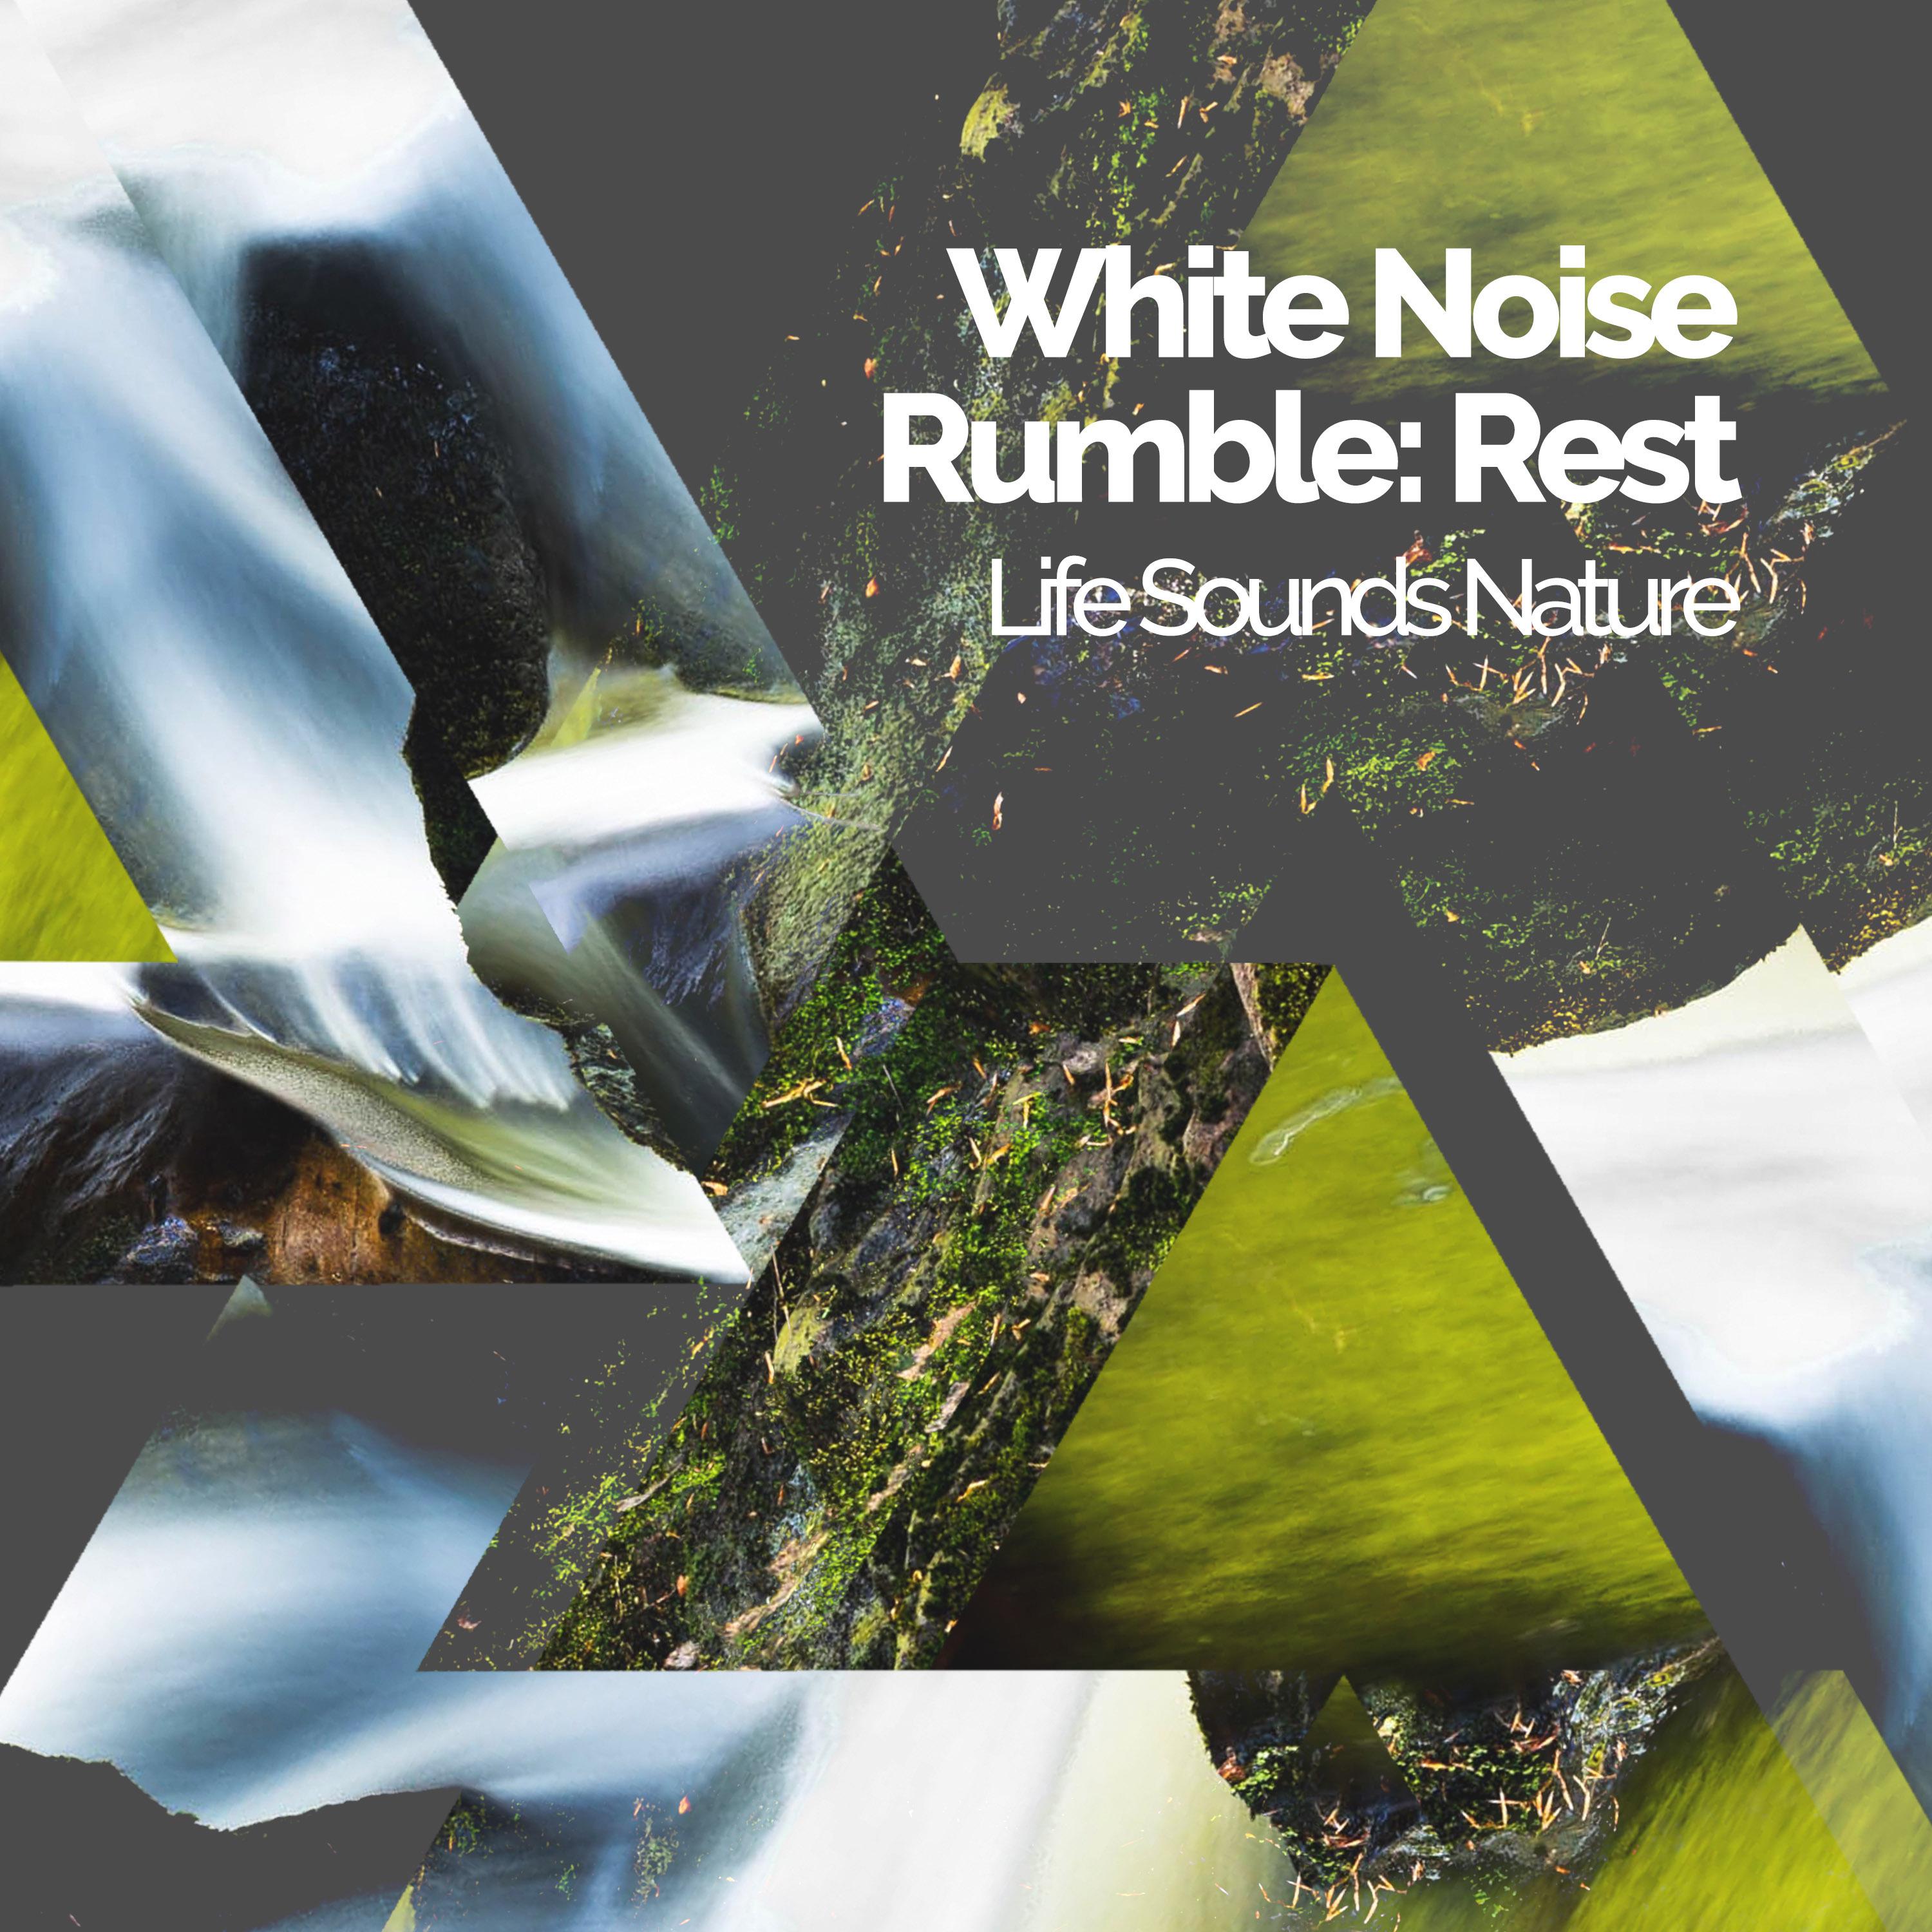 White Noise Rumble: Rest